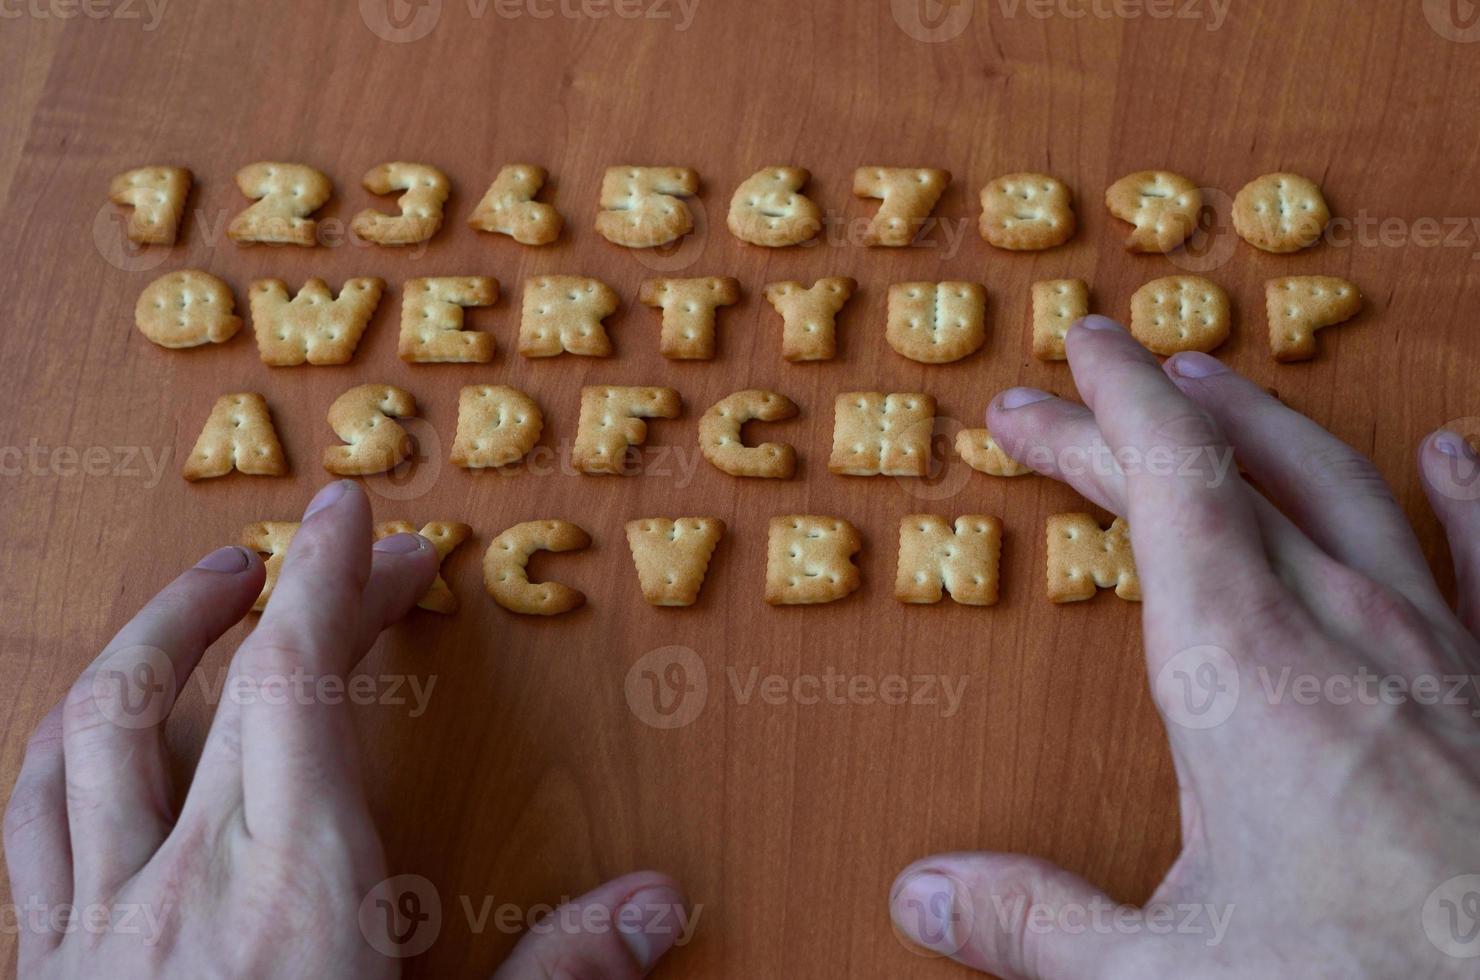 manos en los botones del teclado cracker foto